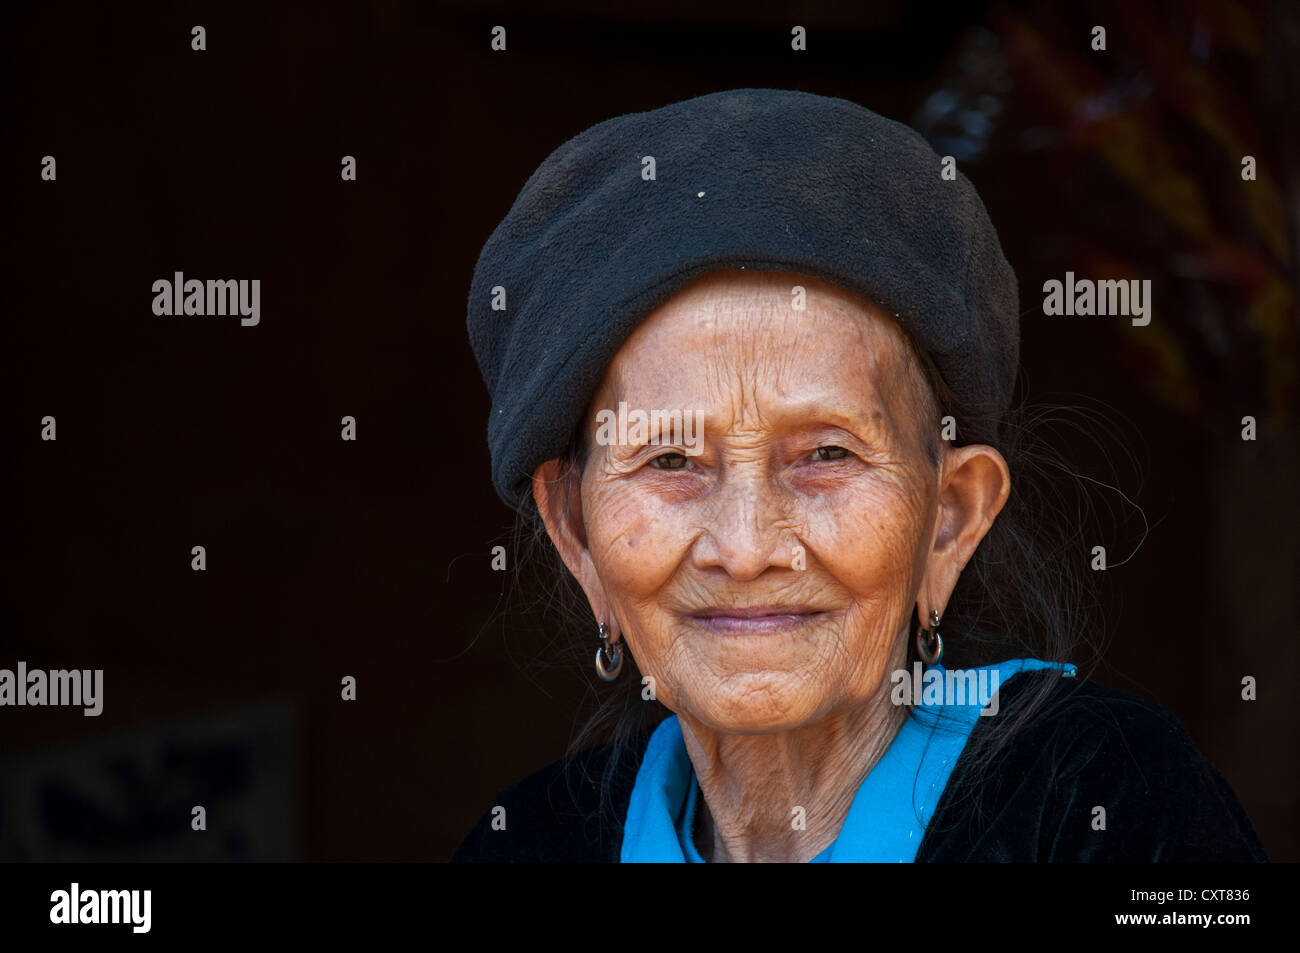 Personnes âgées, de la femme Hmong noir hill tribe, minorité ethnique de l'Asie de l'Est, portrait, Nord de la Thaïlande, Thaïlande Banque D'Images